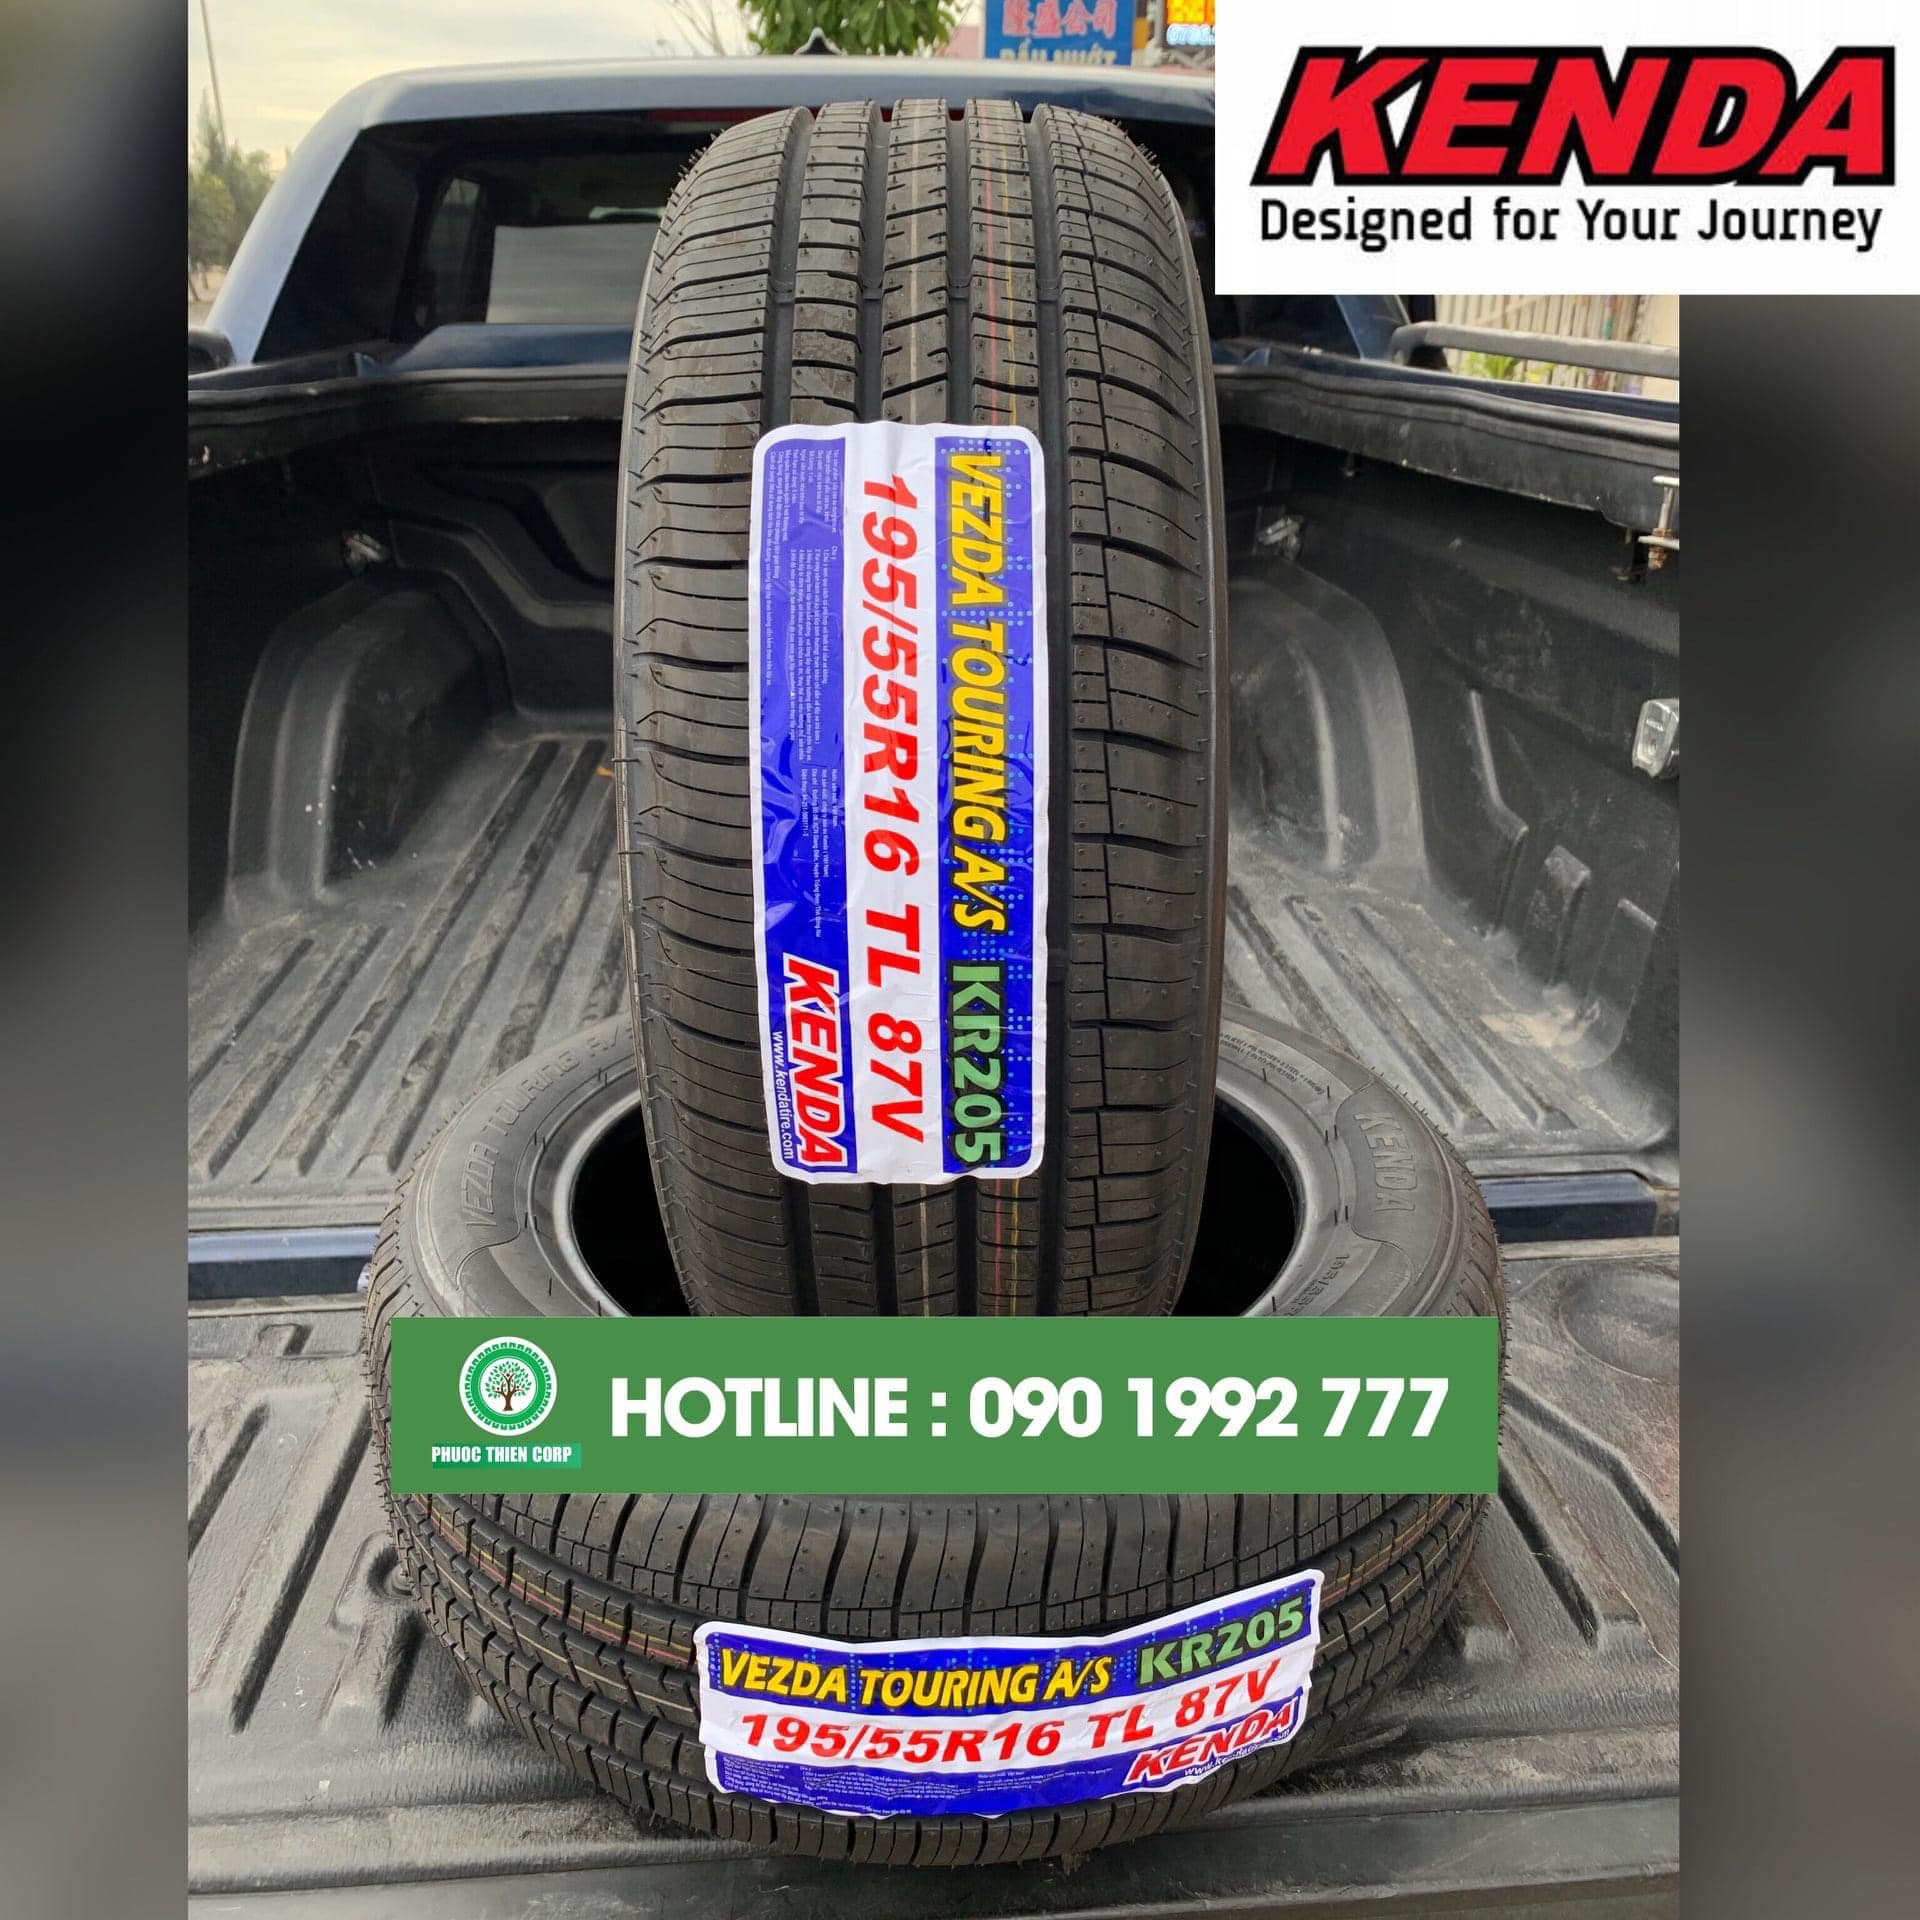 Gợi ý : Thay lốp KENDA (hàng xuất khẩu) cho xe Hyundai Accent